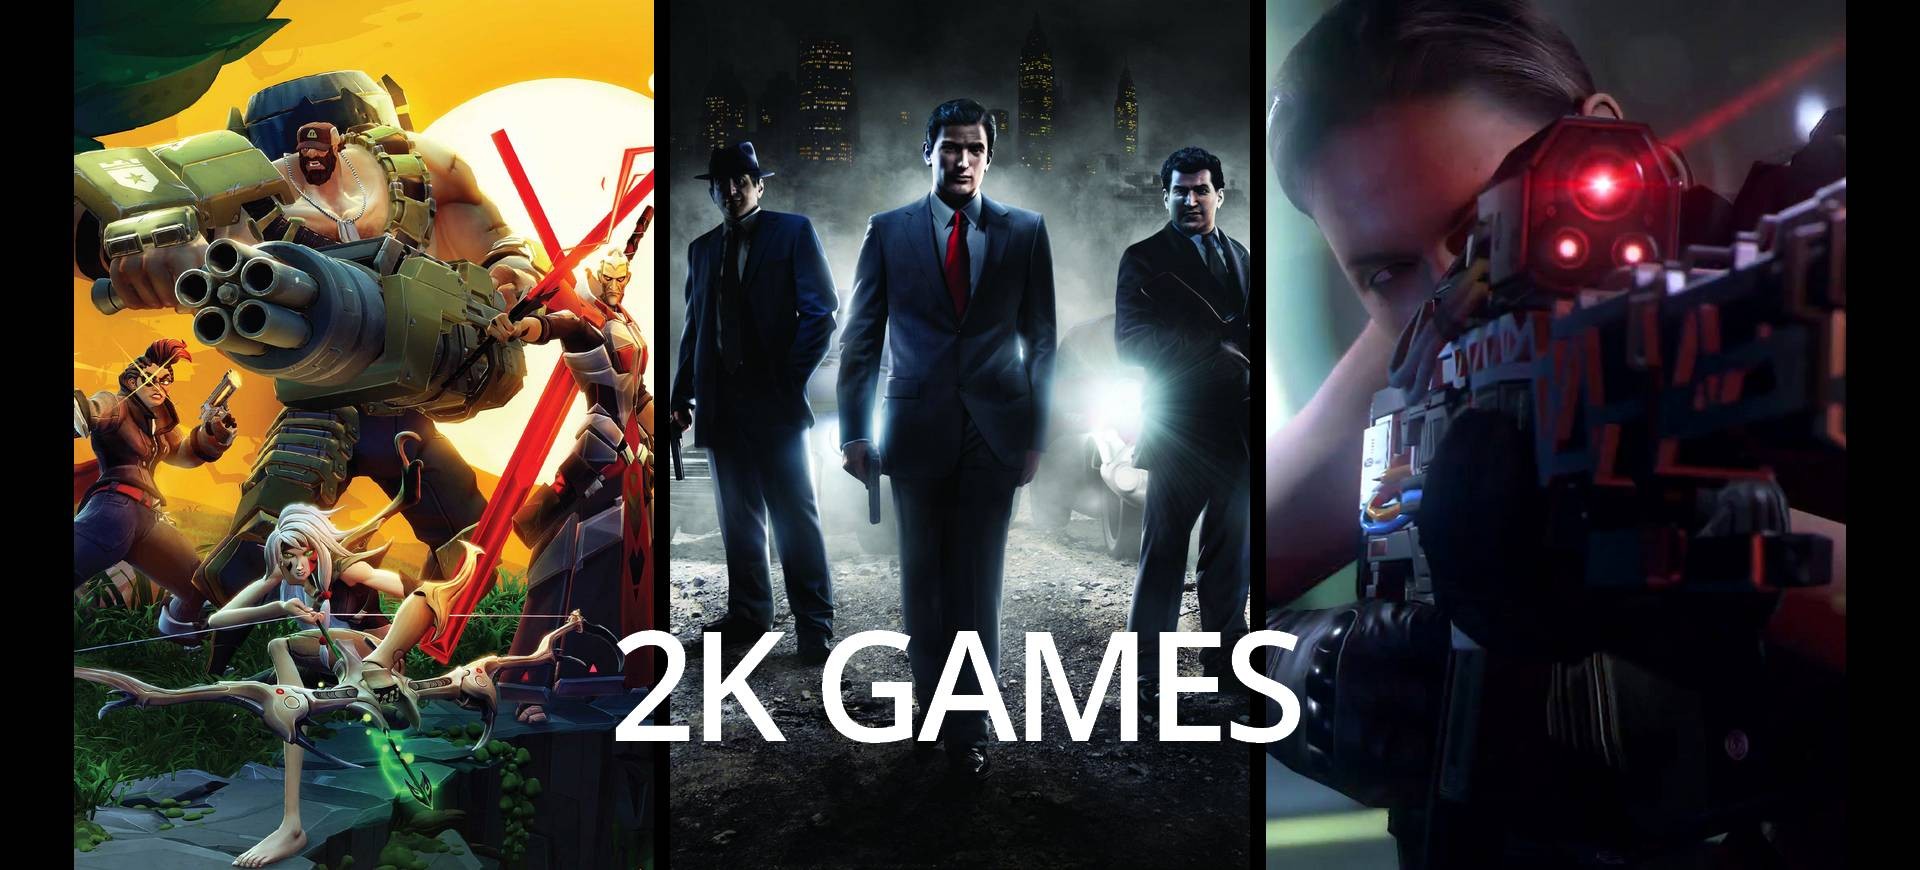 Gamescom 2015: 2K Games - "Bom tạ" và những bất ngờ mới